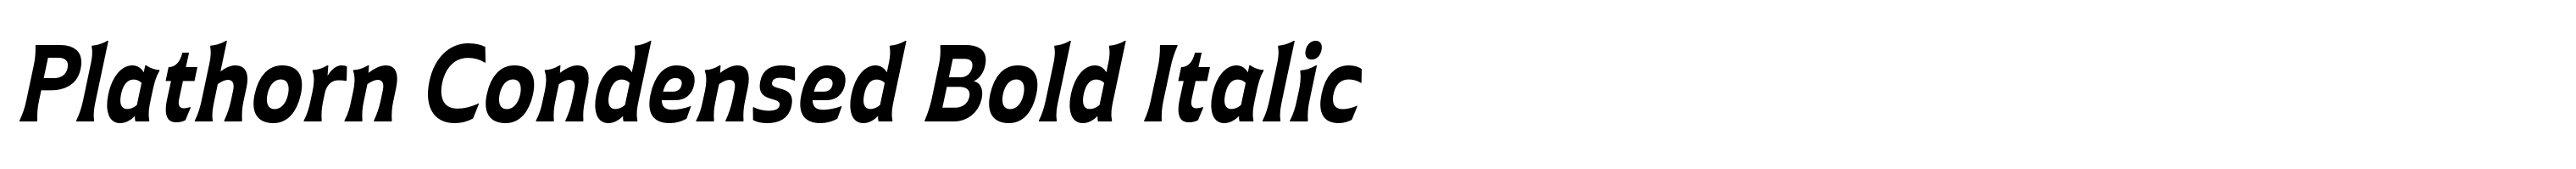 Plathorn Condensed Bold Italic